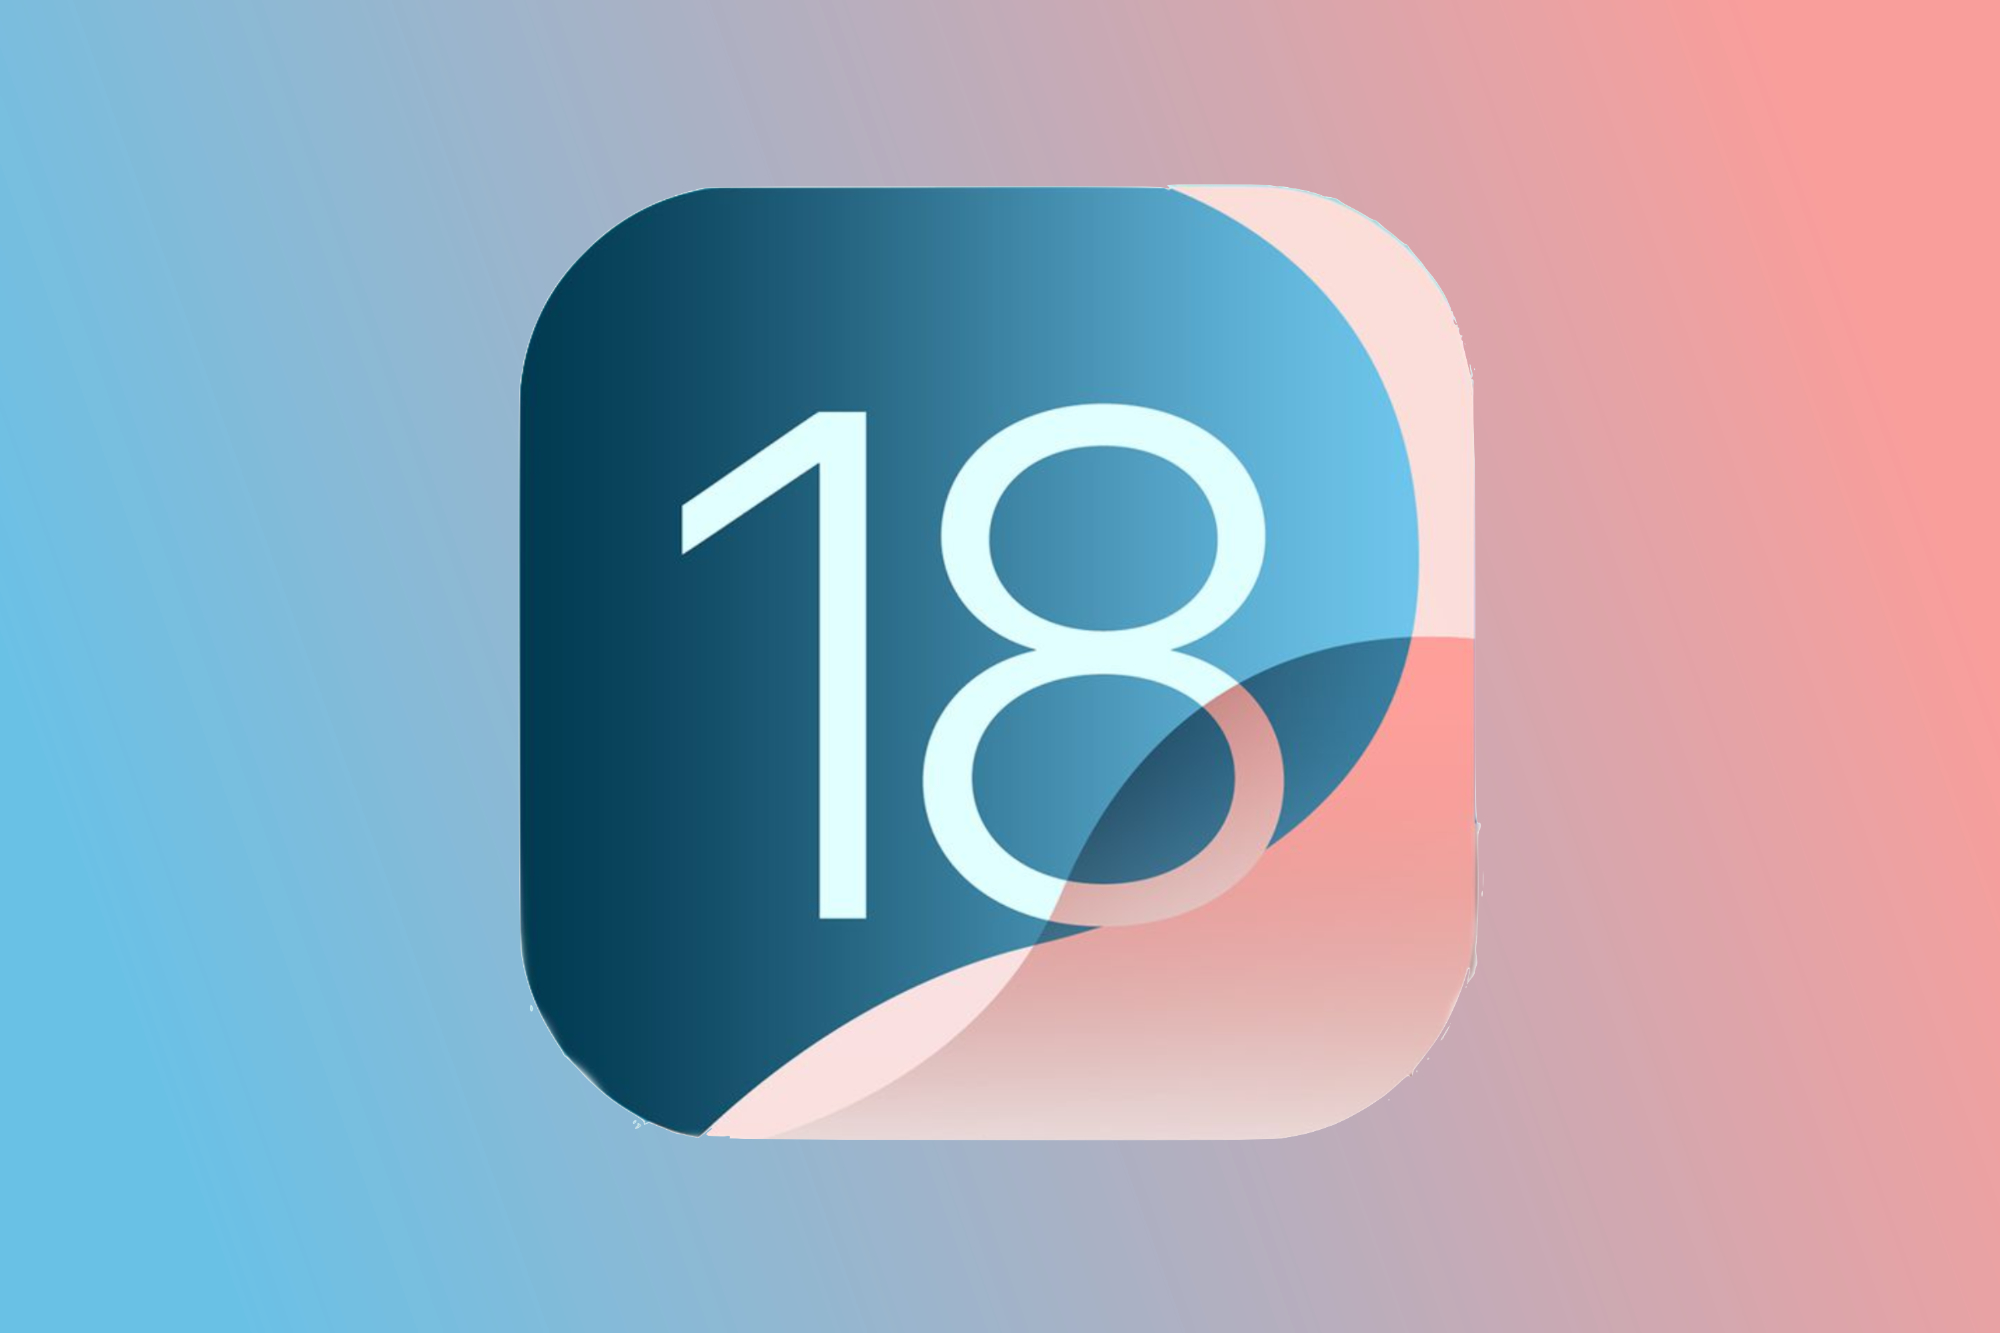 Логотип iOS 18 на сине-розовом фоне.